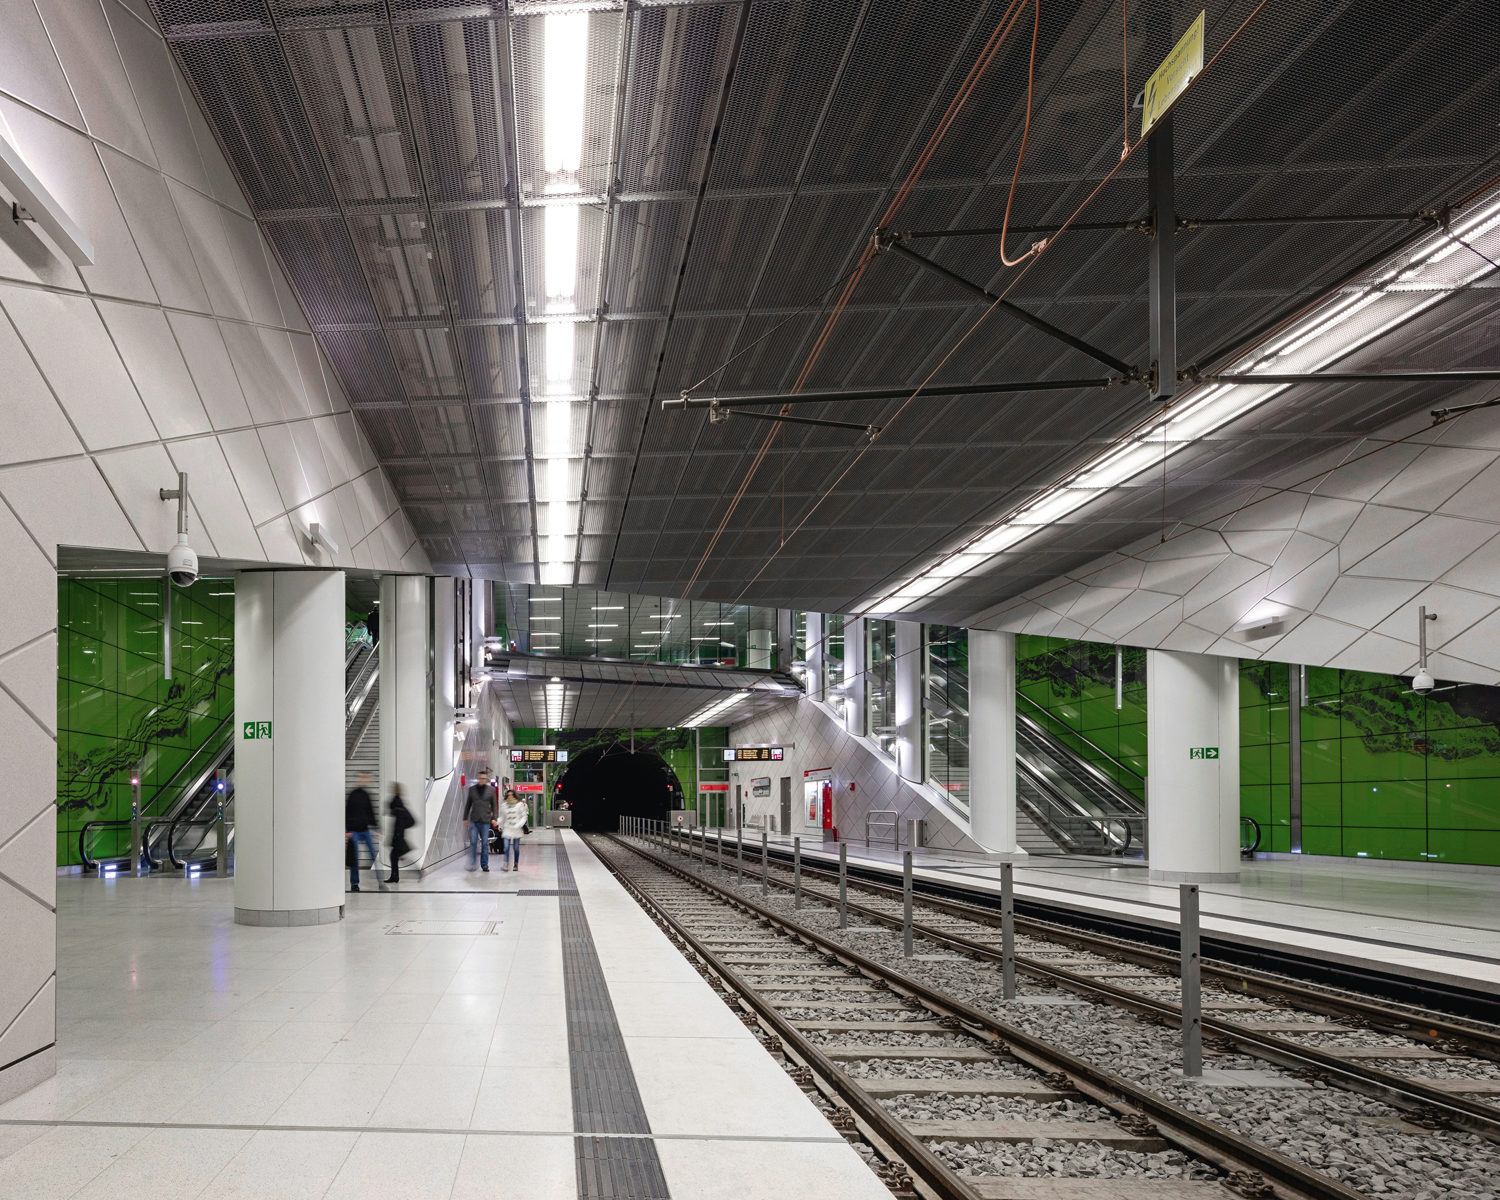 Wehrhahnlinie Duesseldorf, Stations, Graf Adolf Platz, Manuel Franke, netzwerkarchitekten, Photo Joerg Hempel